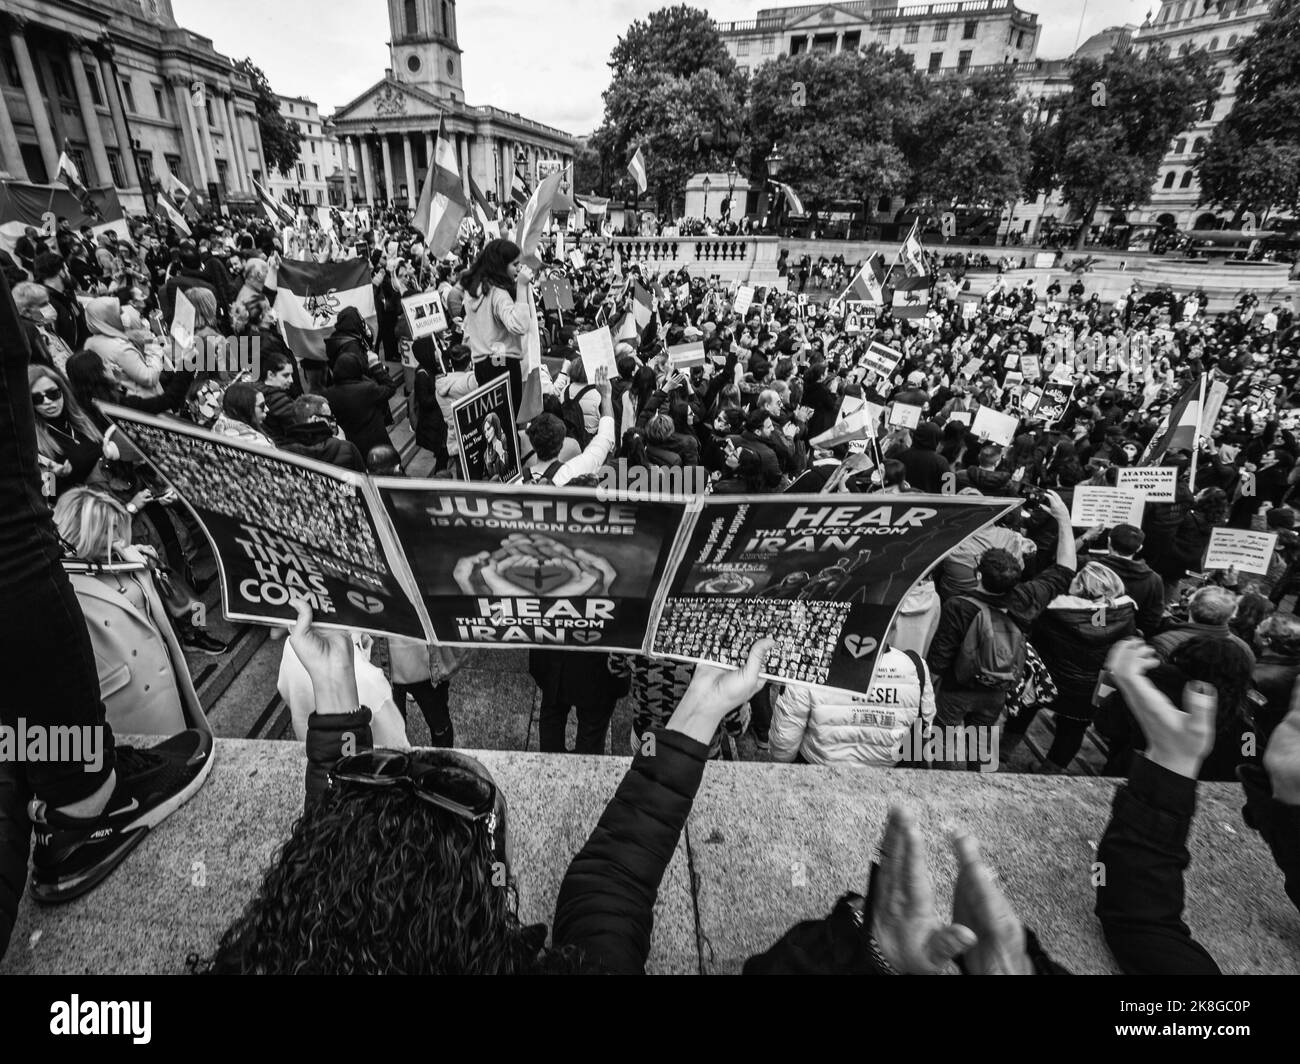 Immagine in bianco e nero delle proteste iraniane a Trafalgar Square dopo la morte in custodia di Mahsa Amini in Iran. Foto Stock